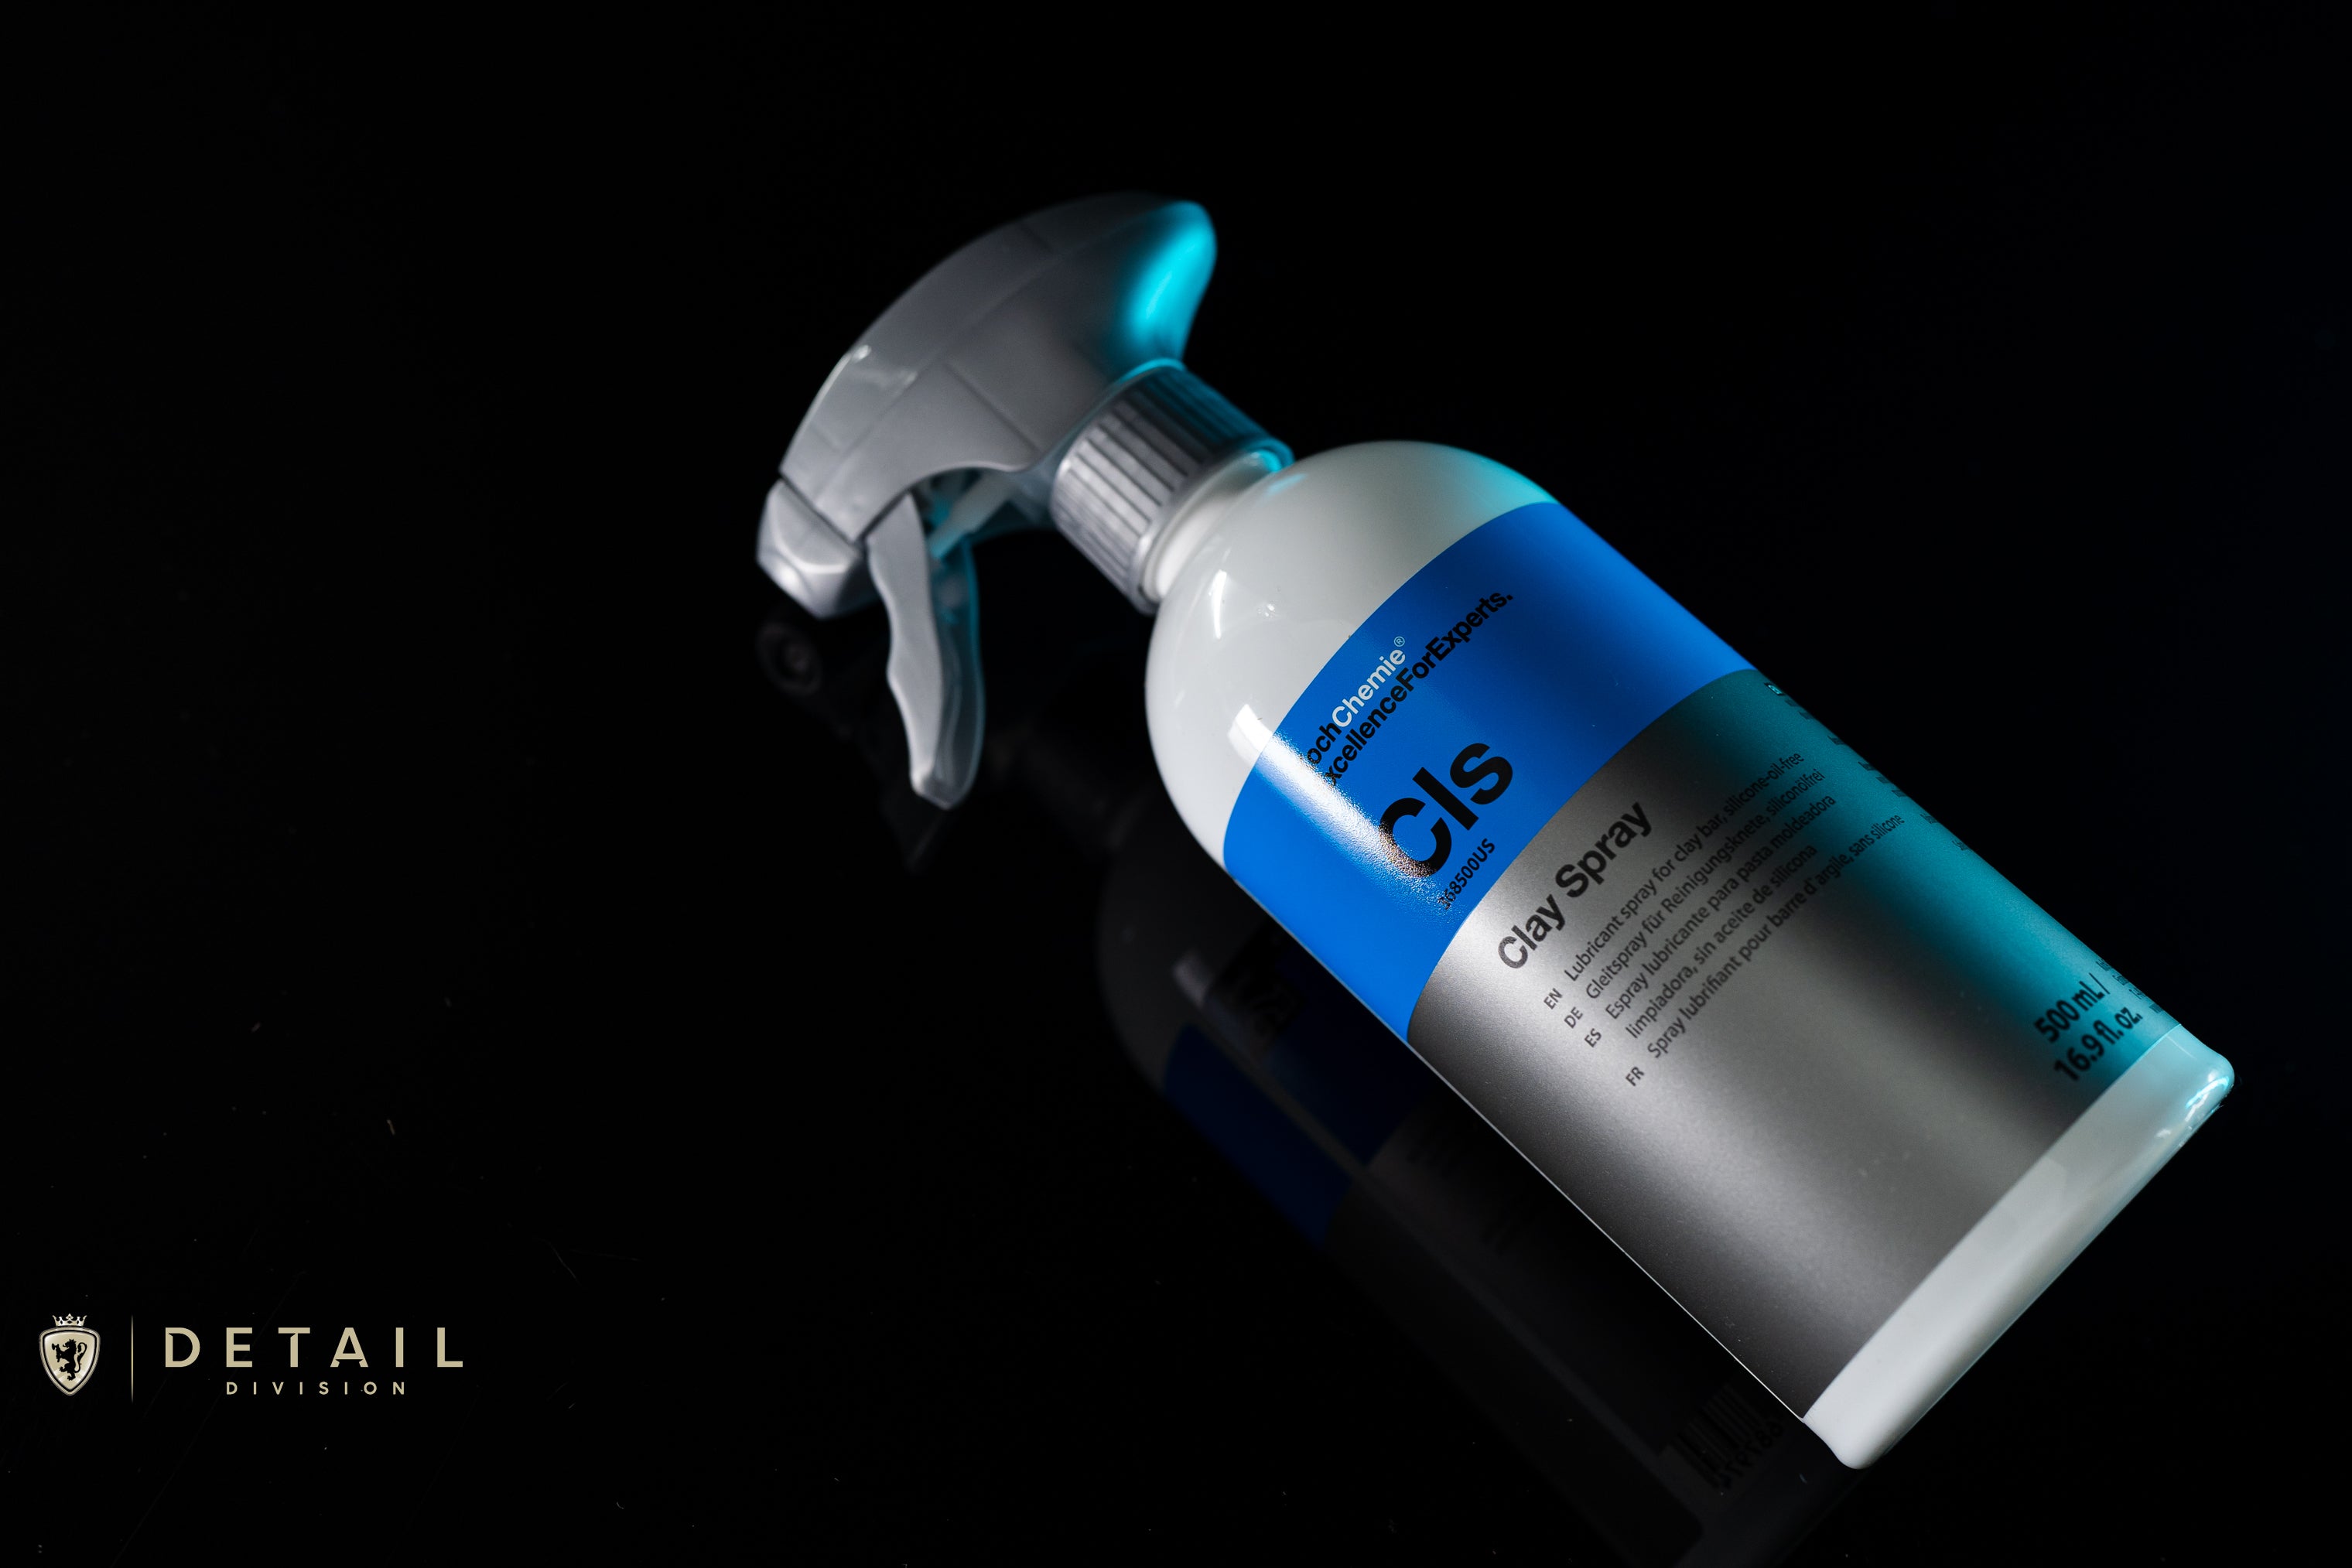 KOCH CHEMIE | Spray Sealant S0.02 - 500 ml